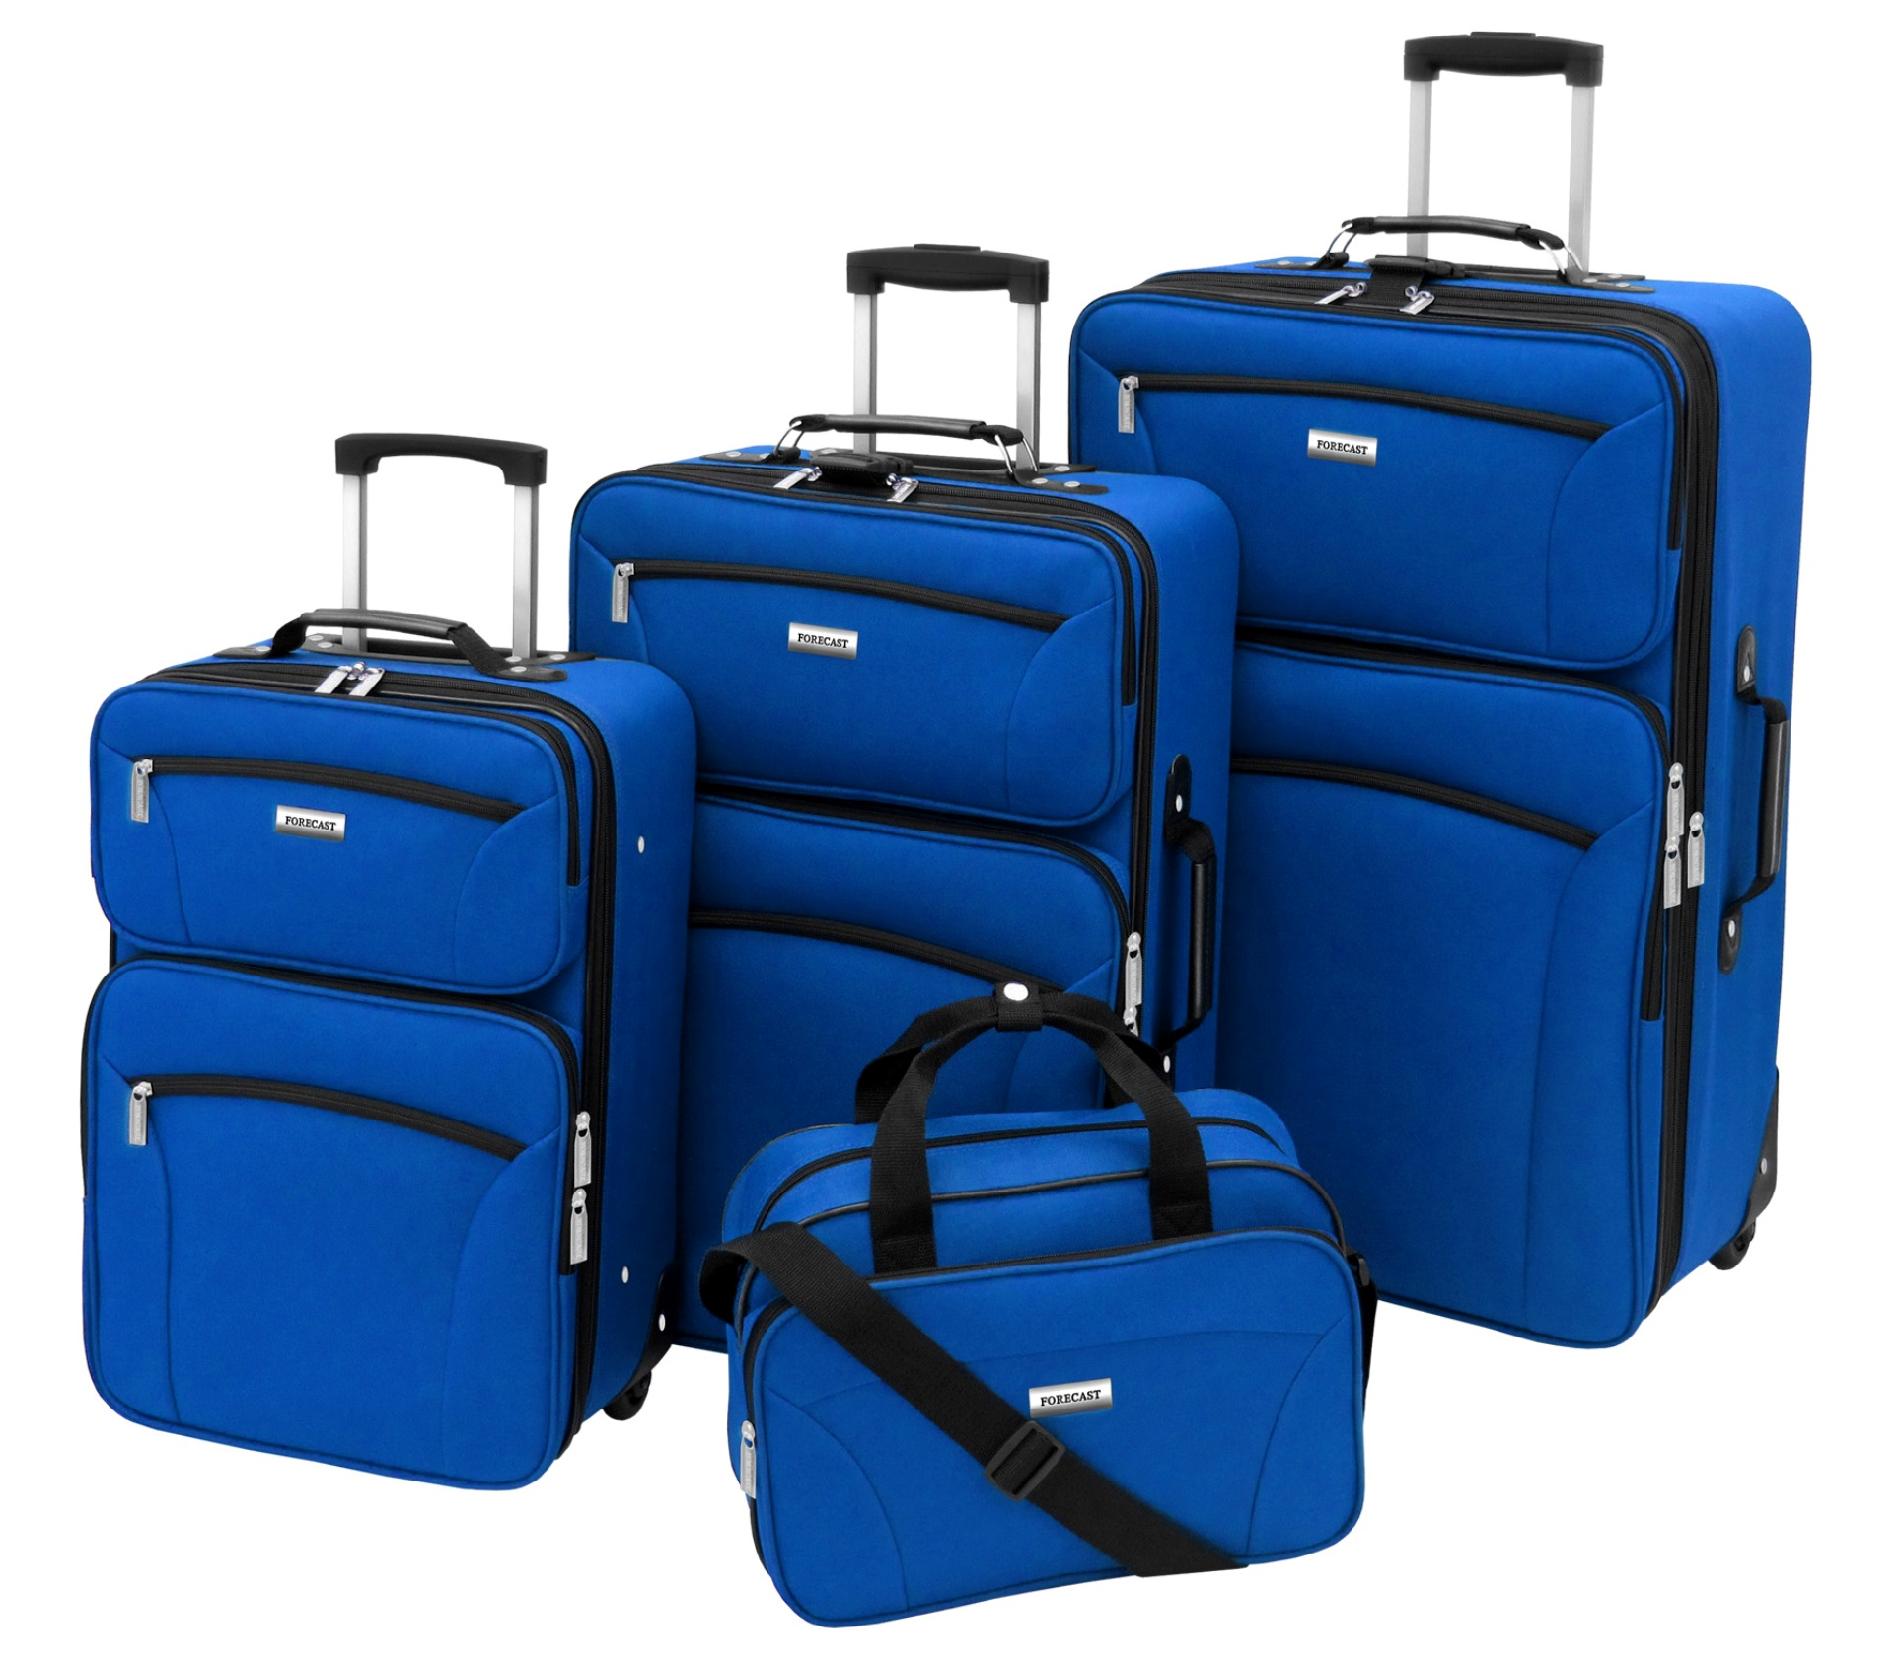 Forecast Barbados 4 Piece Set Luggage - Blue